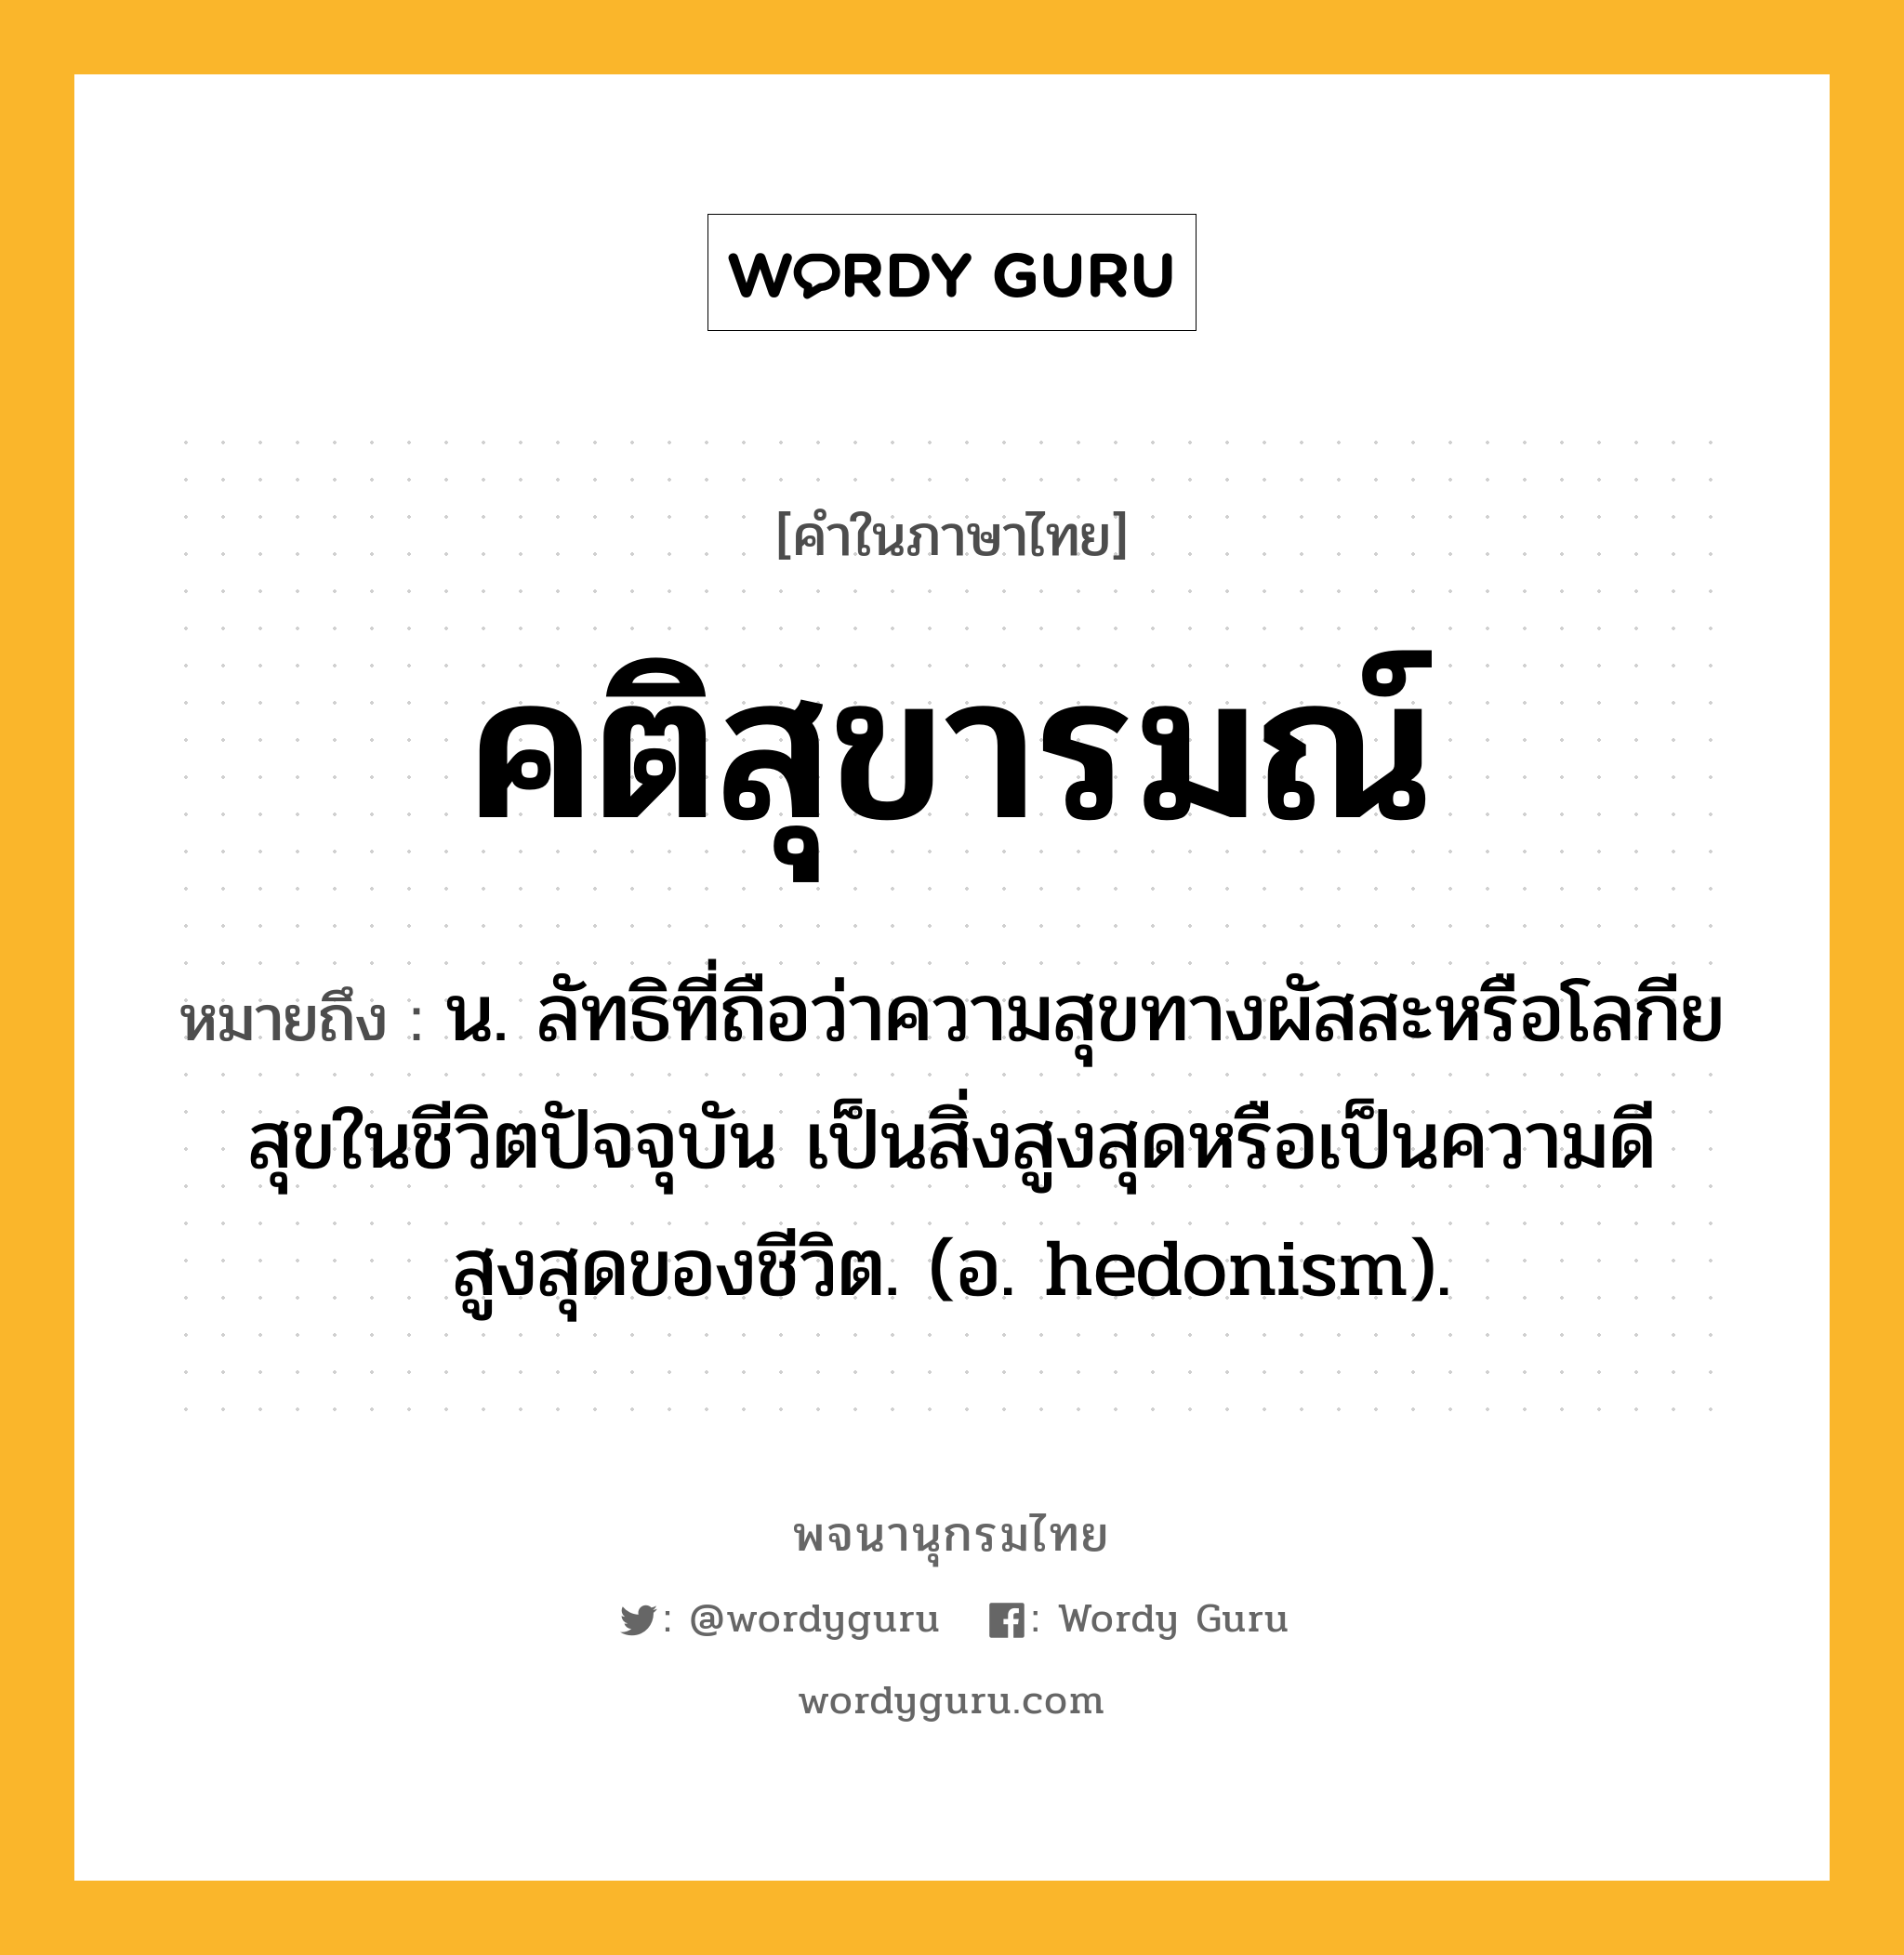 คติสุขารมณ์ หมายถึงอะไร?, คำในภาษาไทย คติสุขารมณ์ หมายถึง น. ลัทธิที่ถือว่าความสุขทางผัสสะหรือโลกียสุขในชีวิตปัจจุบัน เป็นสิ่งสูงสุดหรือเป็นความดีสูงสุดของชีวิต. (อ. hedonism).